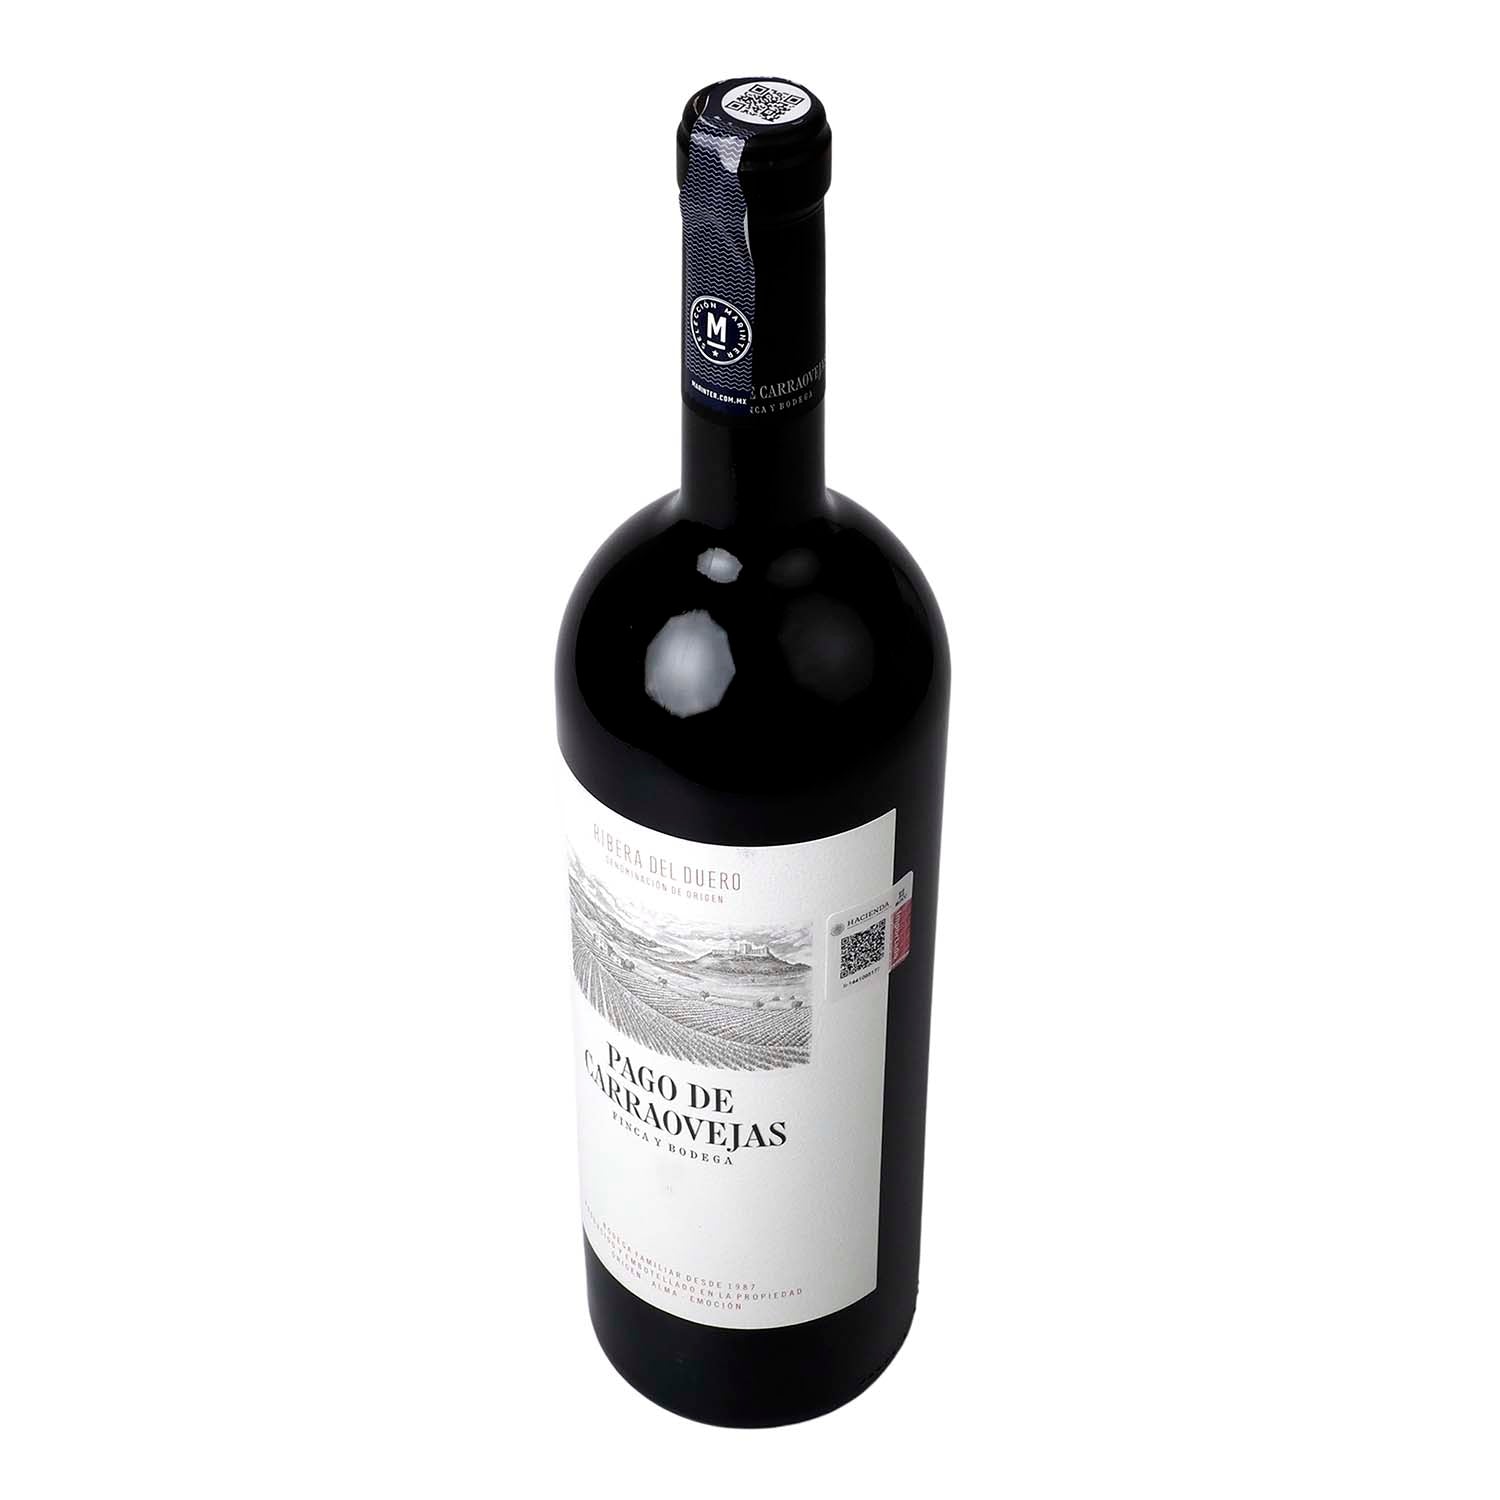 Vino Tinto Pago de Carraovejas 2020 de 1500 ml - España